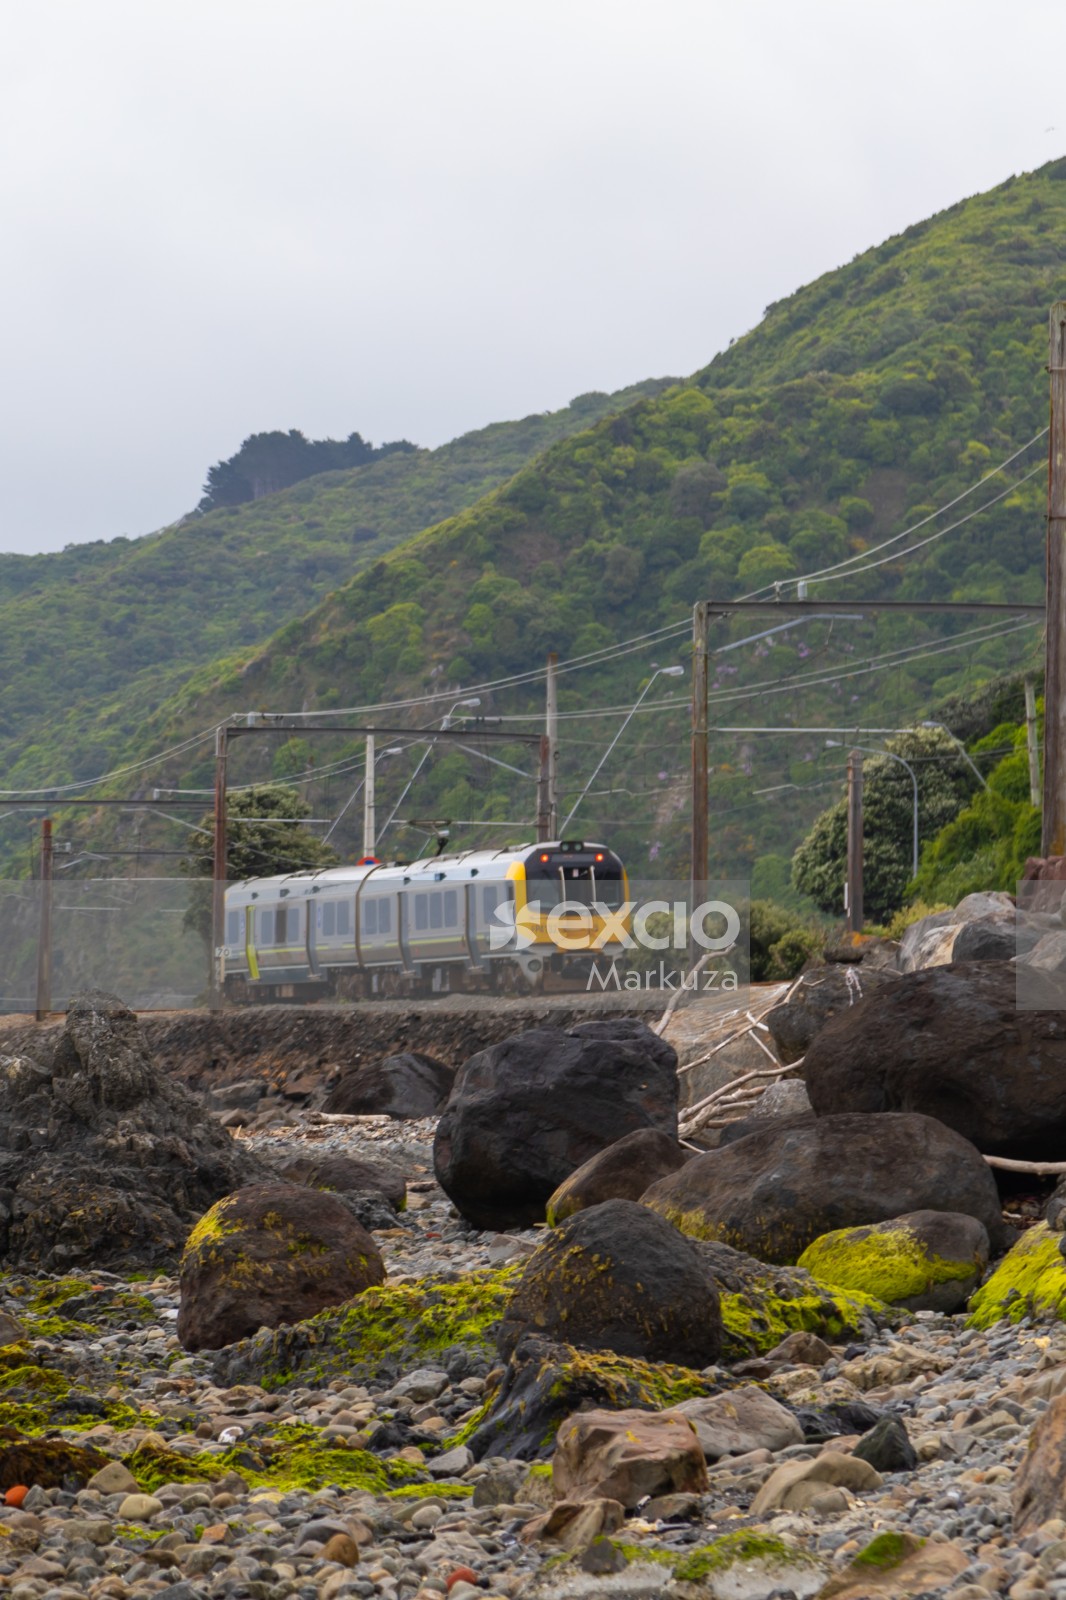 Coastal train and algae on rocks